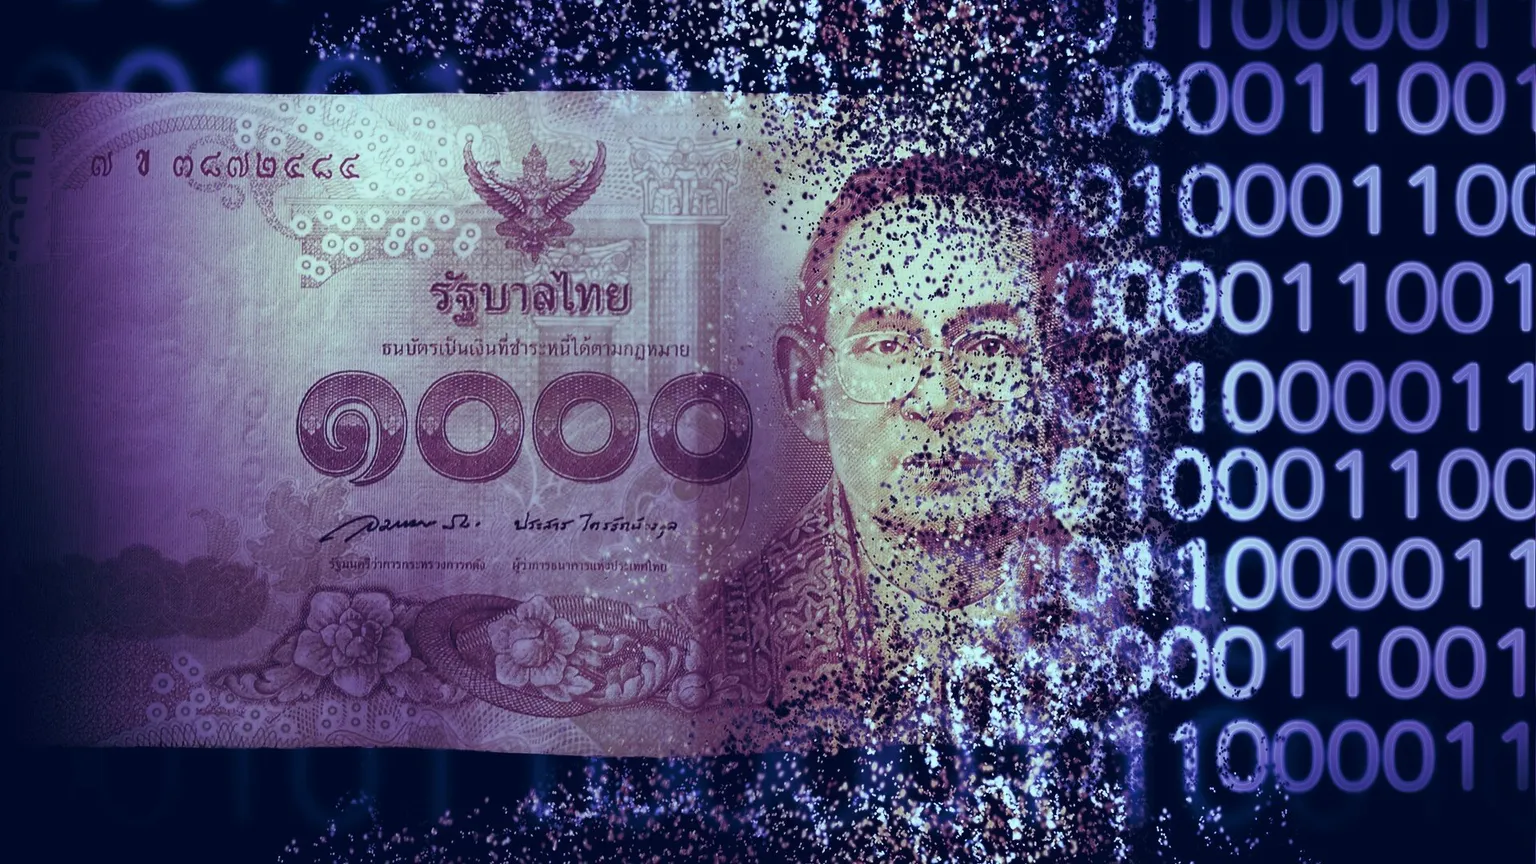 Tailandia está planeando lanzar una moneda digital de banco central, o CBDC. (Imagen: Shutterstock)  